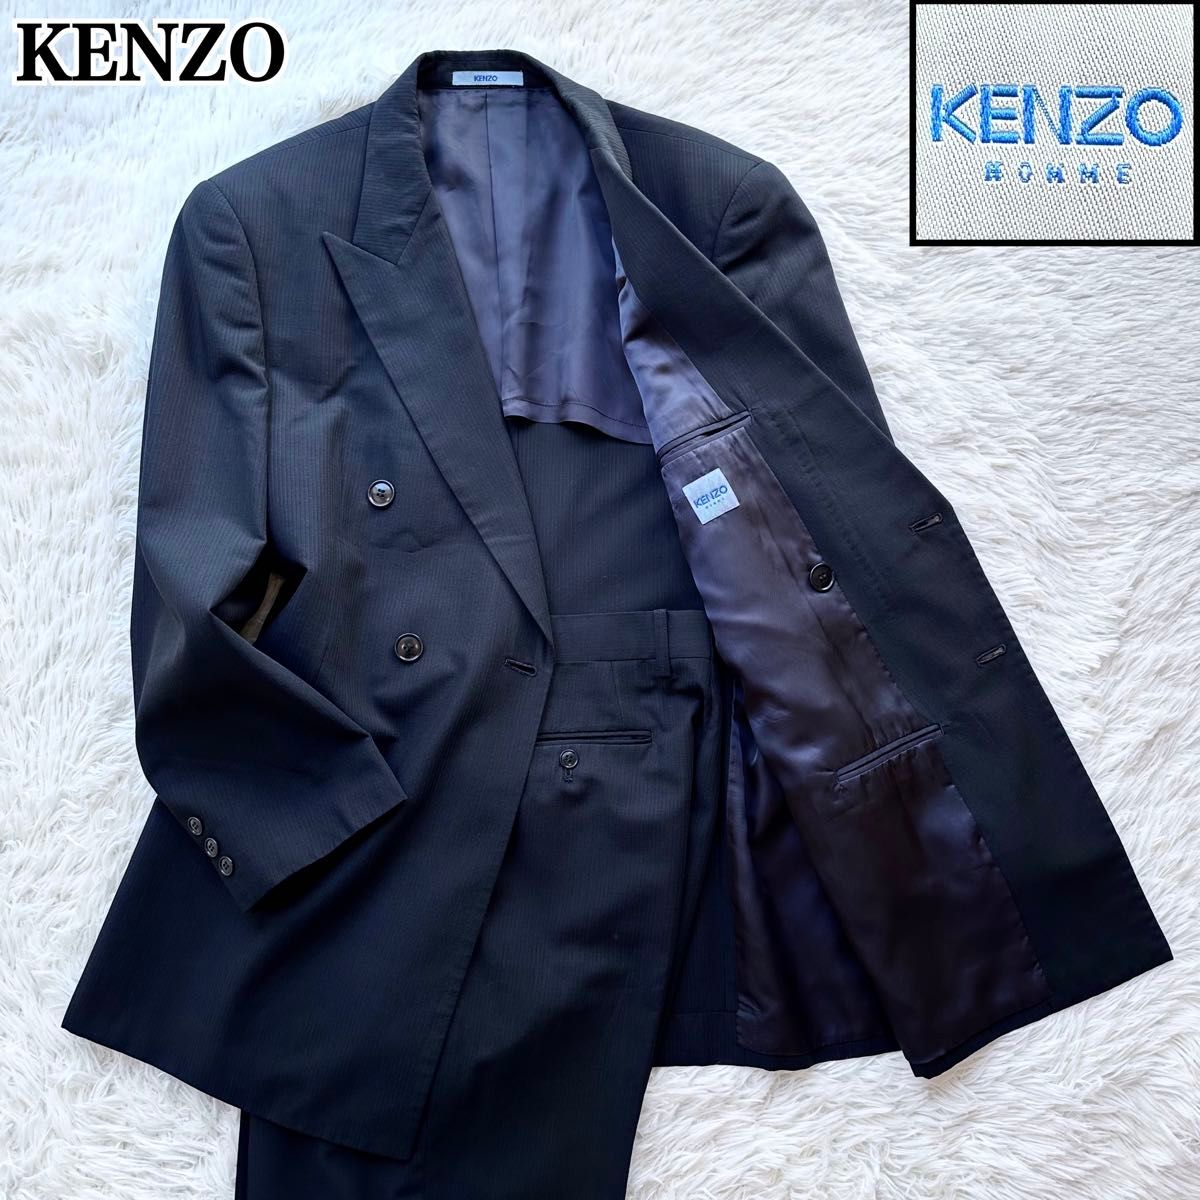 Vintage 90's KENZO ケンゾー ダブルブレスト セットアップスーツ ブラックスーツ 冠婚葬祭 XL 大きいサイズ